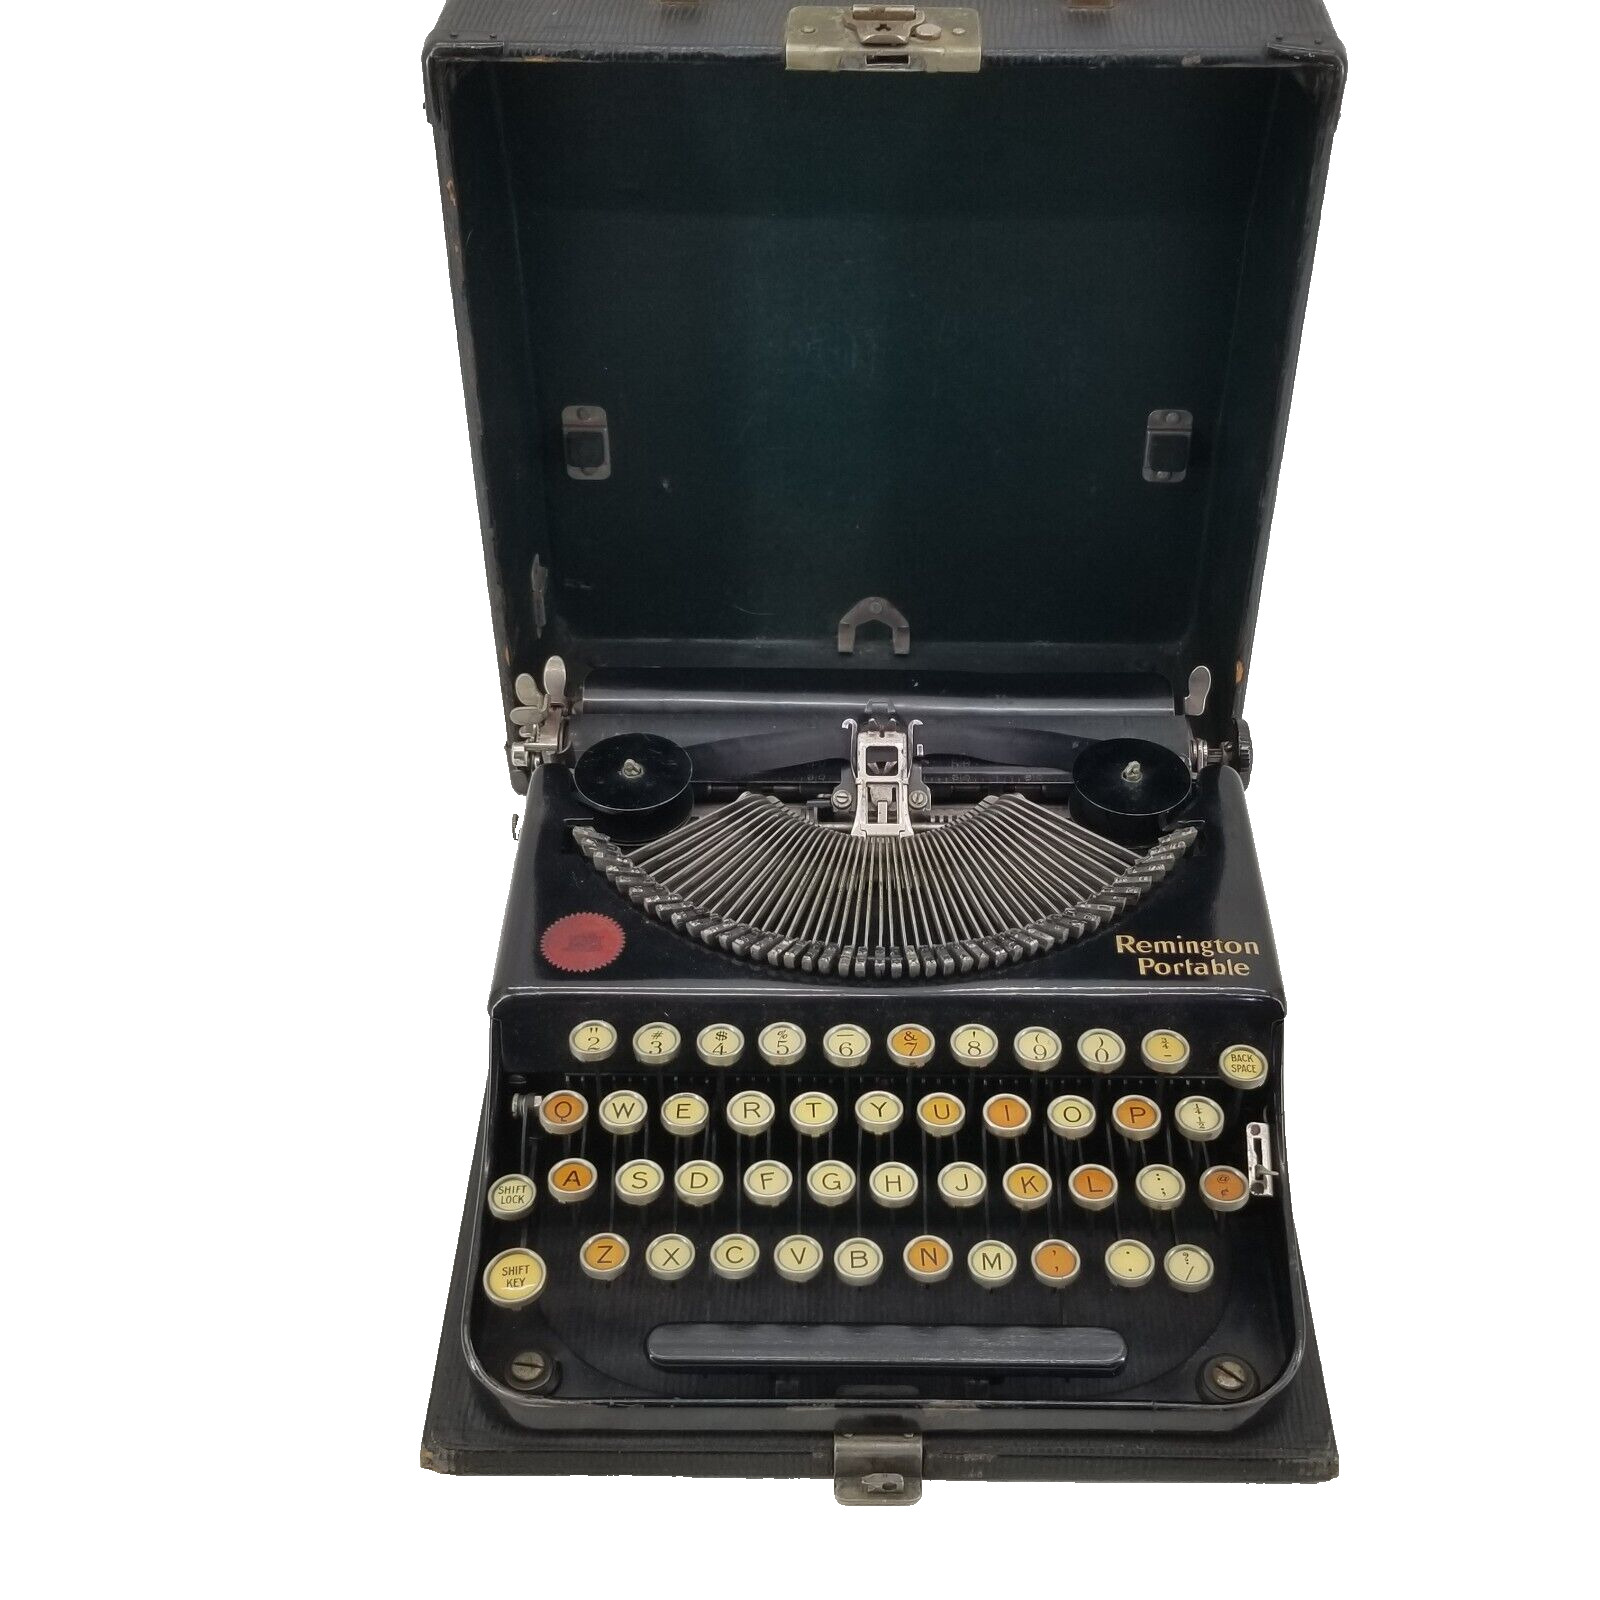 Super Rare 1920s Remington Portable Manual  Vintage Typewriter in Black